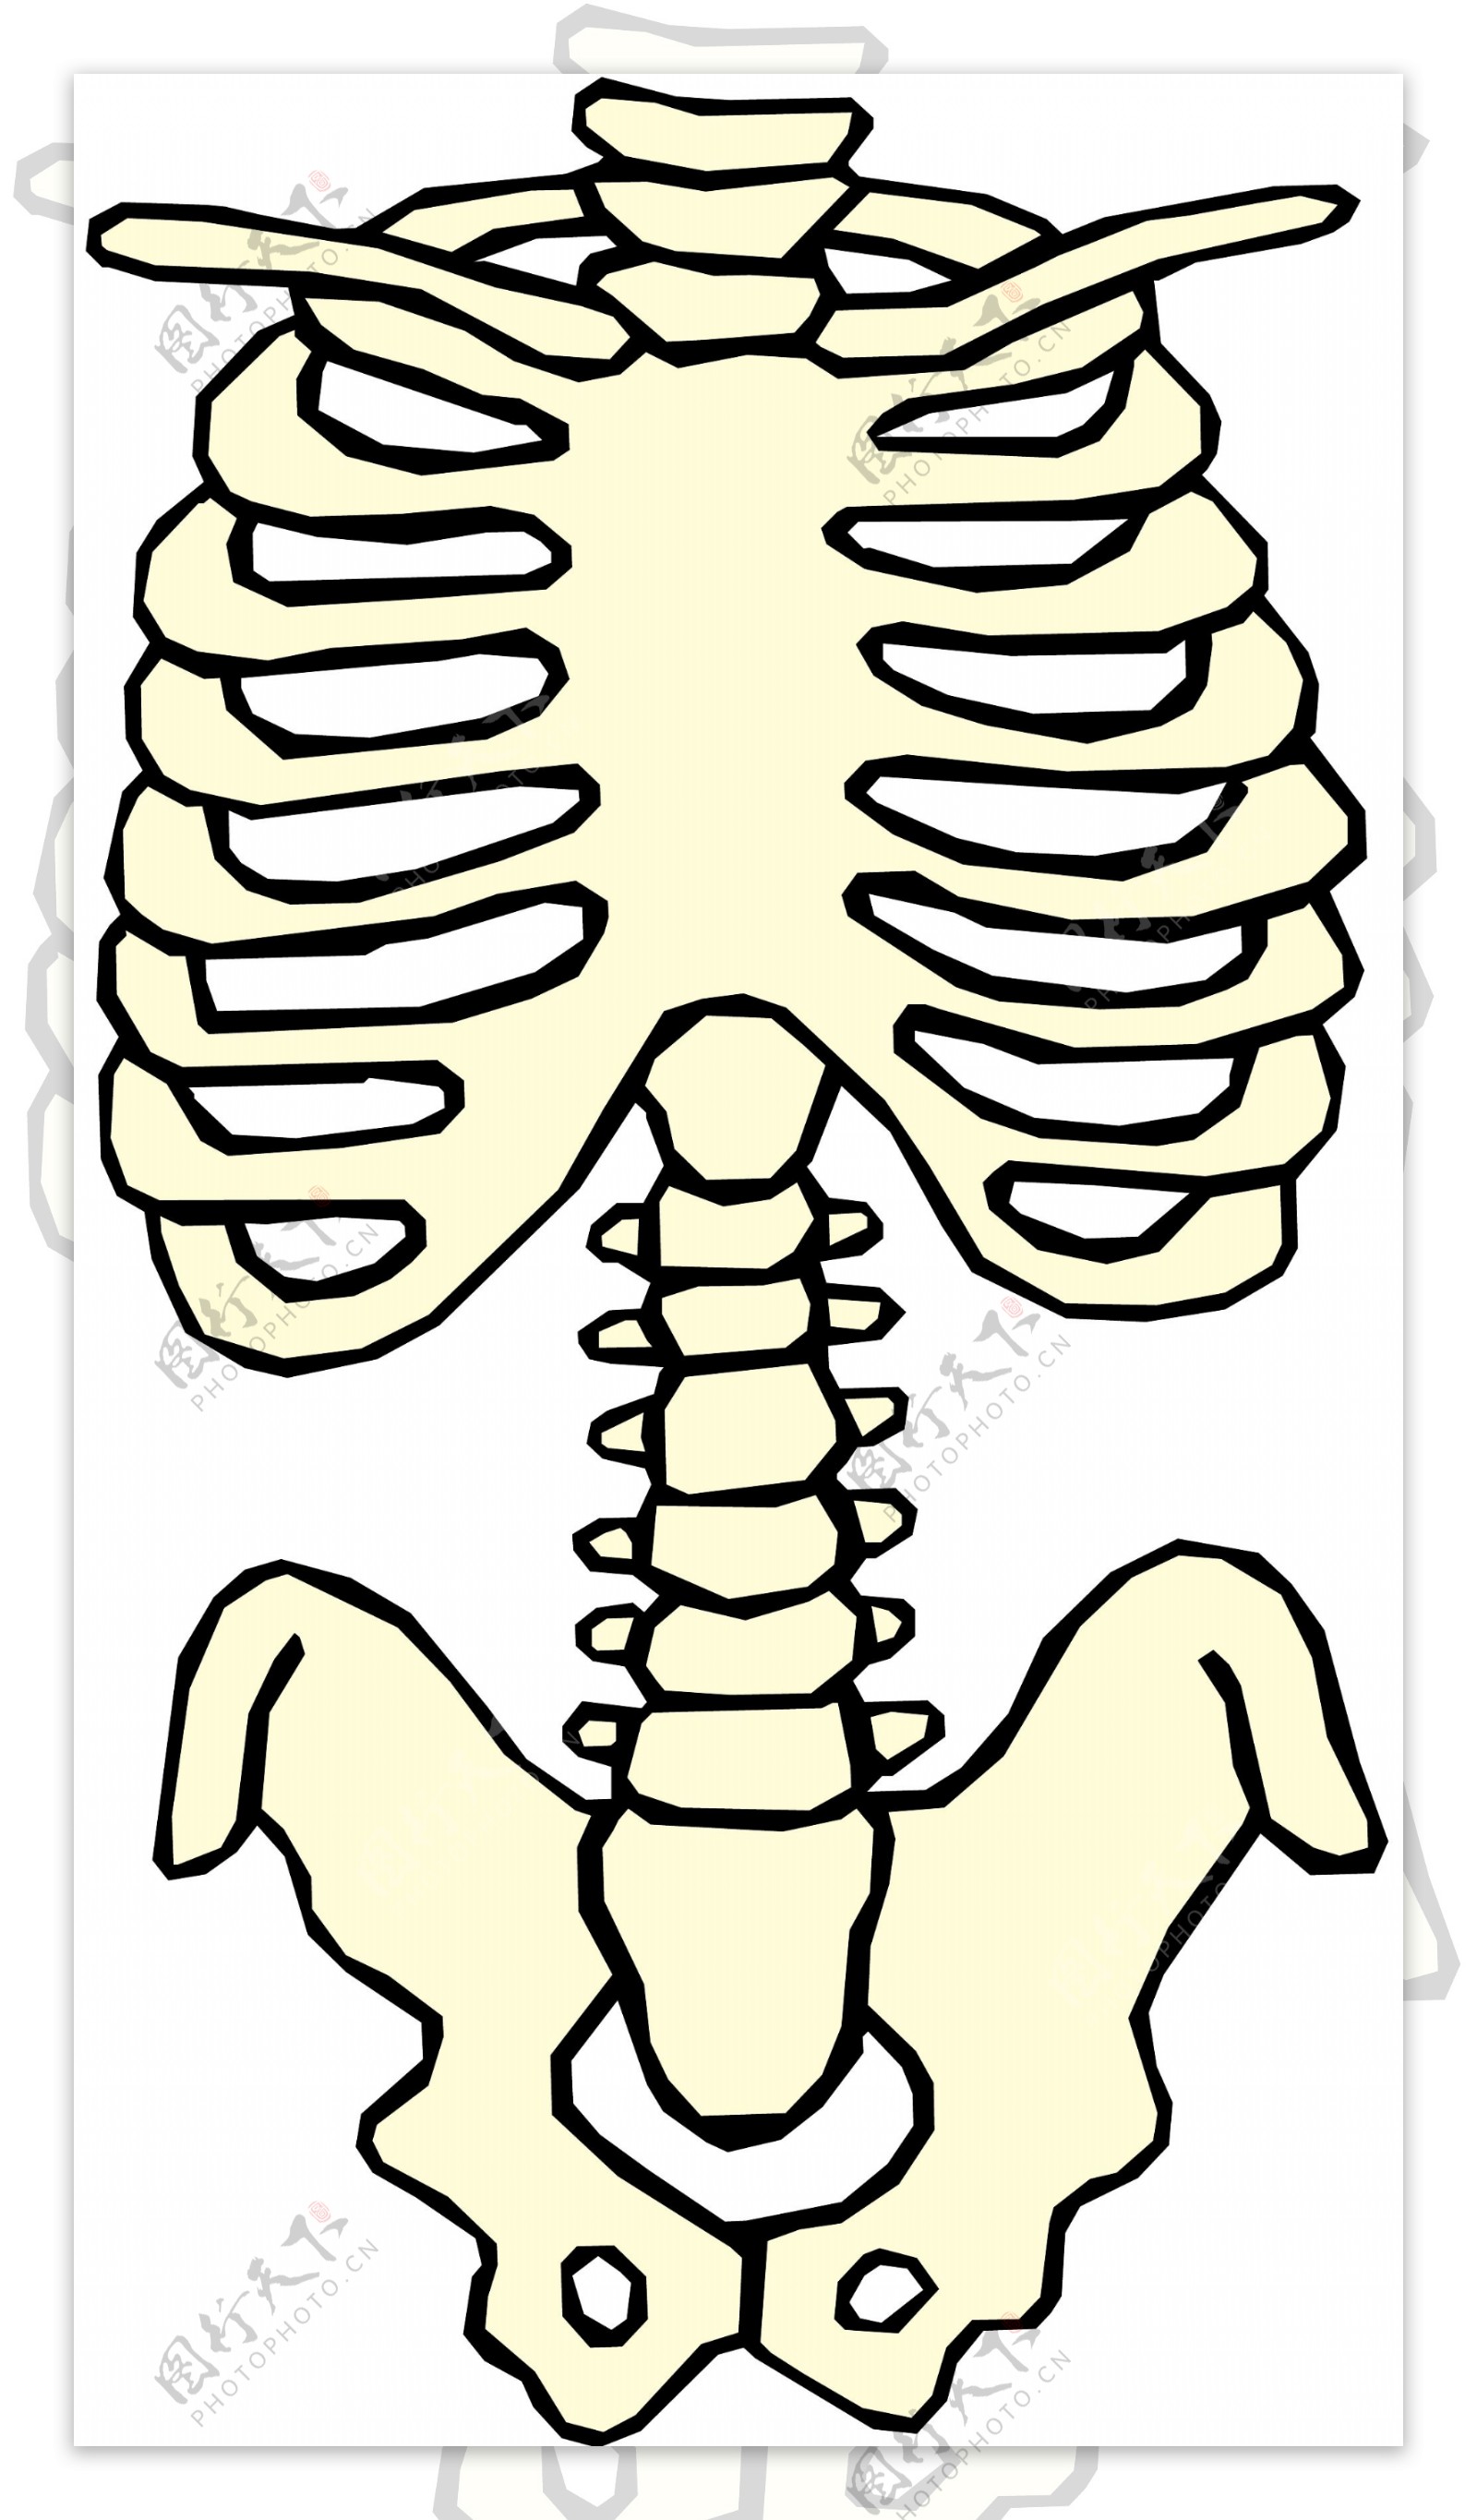 人体骨骼医用模型矢量素材EPS0220